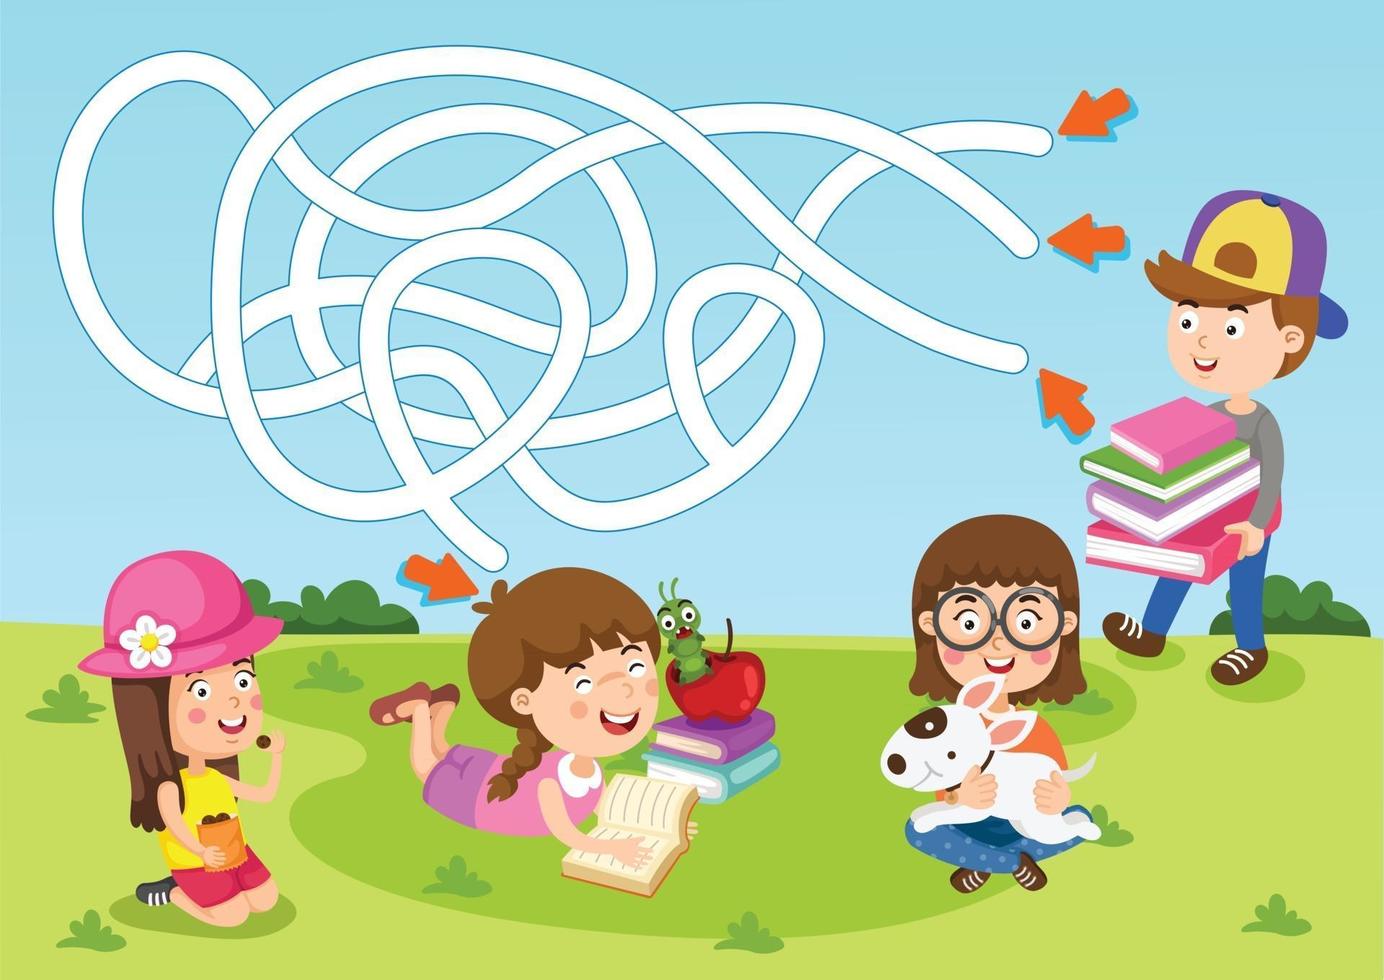 jogo educacional de labirinto para ilustração infantil vetor